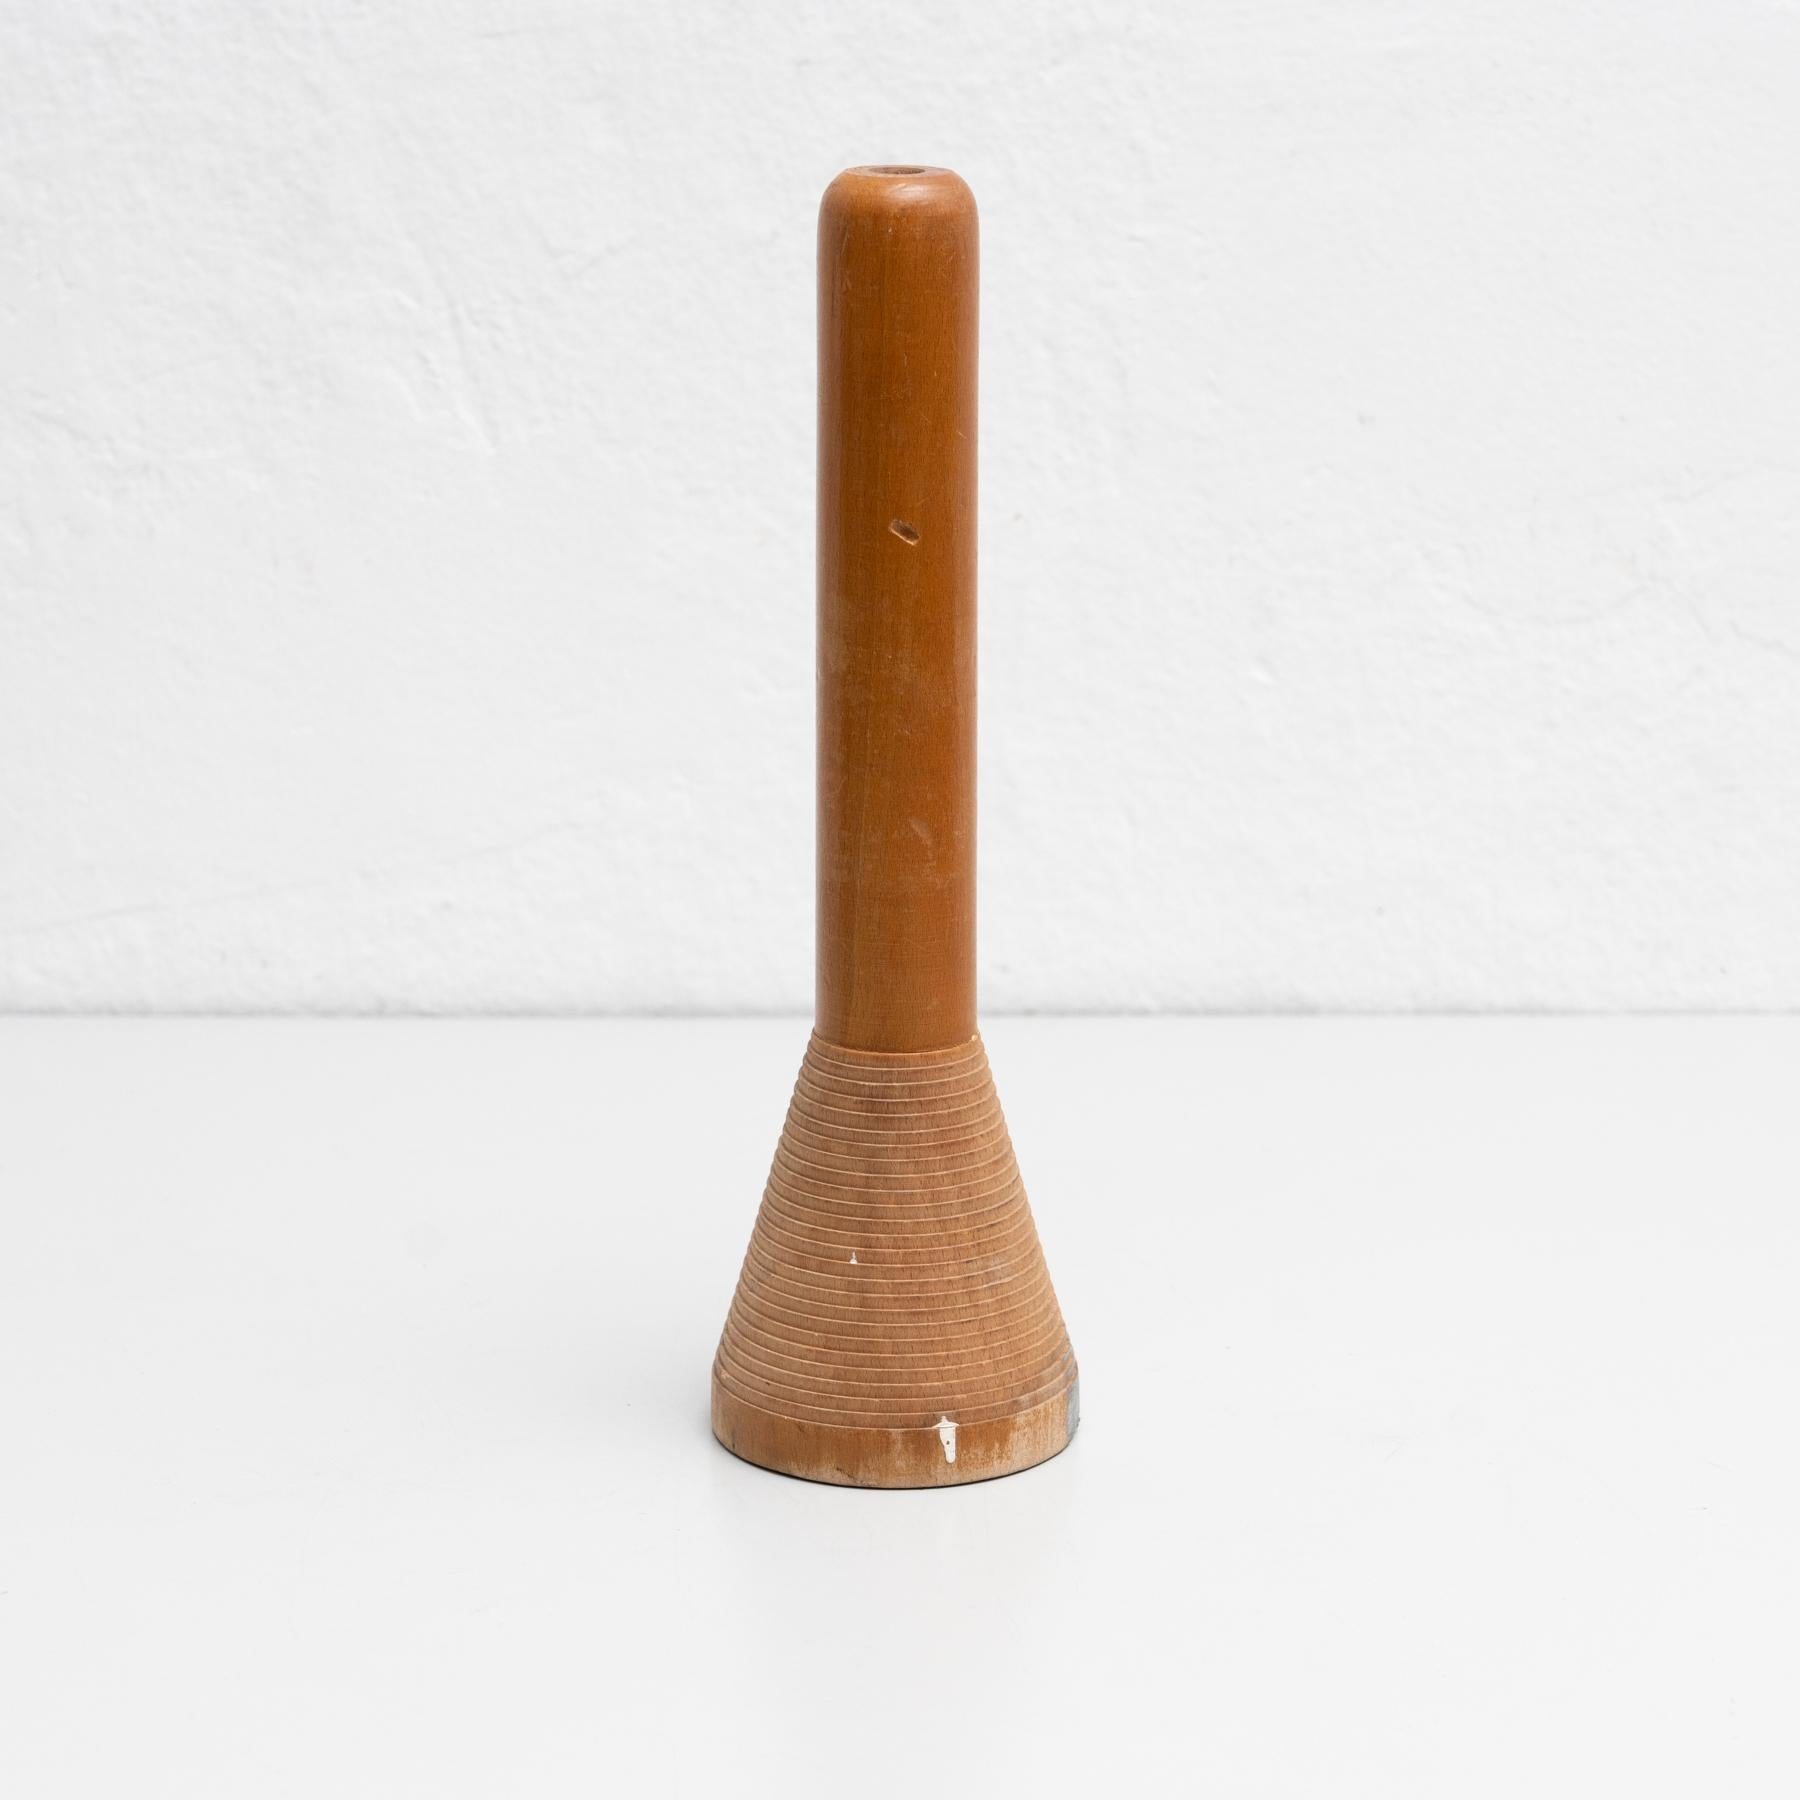 Rustikale Fadenspule aus Holz, unbekannter Hersteller aus Spanien, um 1930.

Originaler Zustand mit geringen alters- und gebrauchsbedingten Abnutzungserscheinungen, der eine schöne Patina aufweist.

MATERIALIEN:
Holz.

